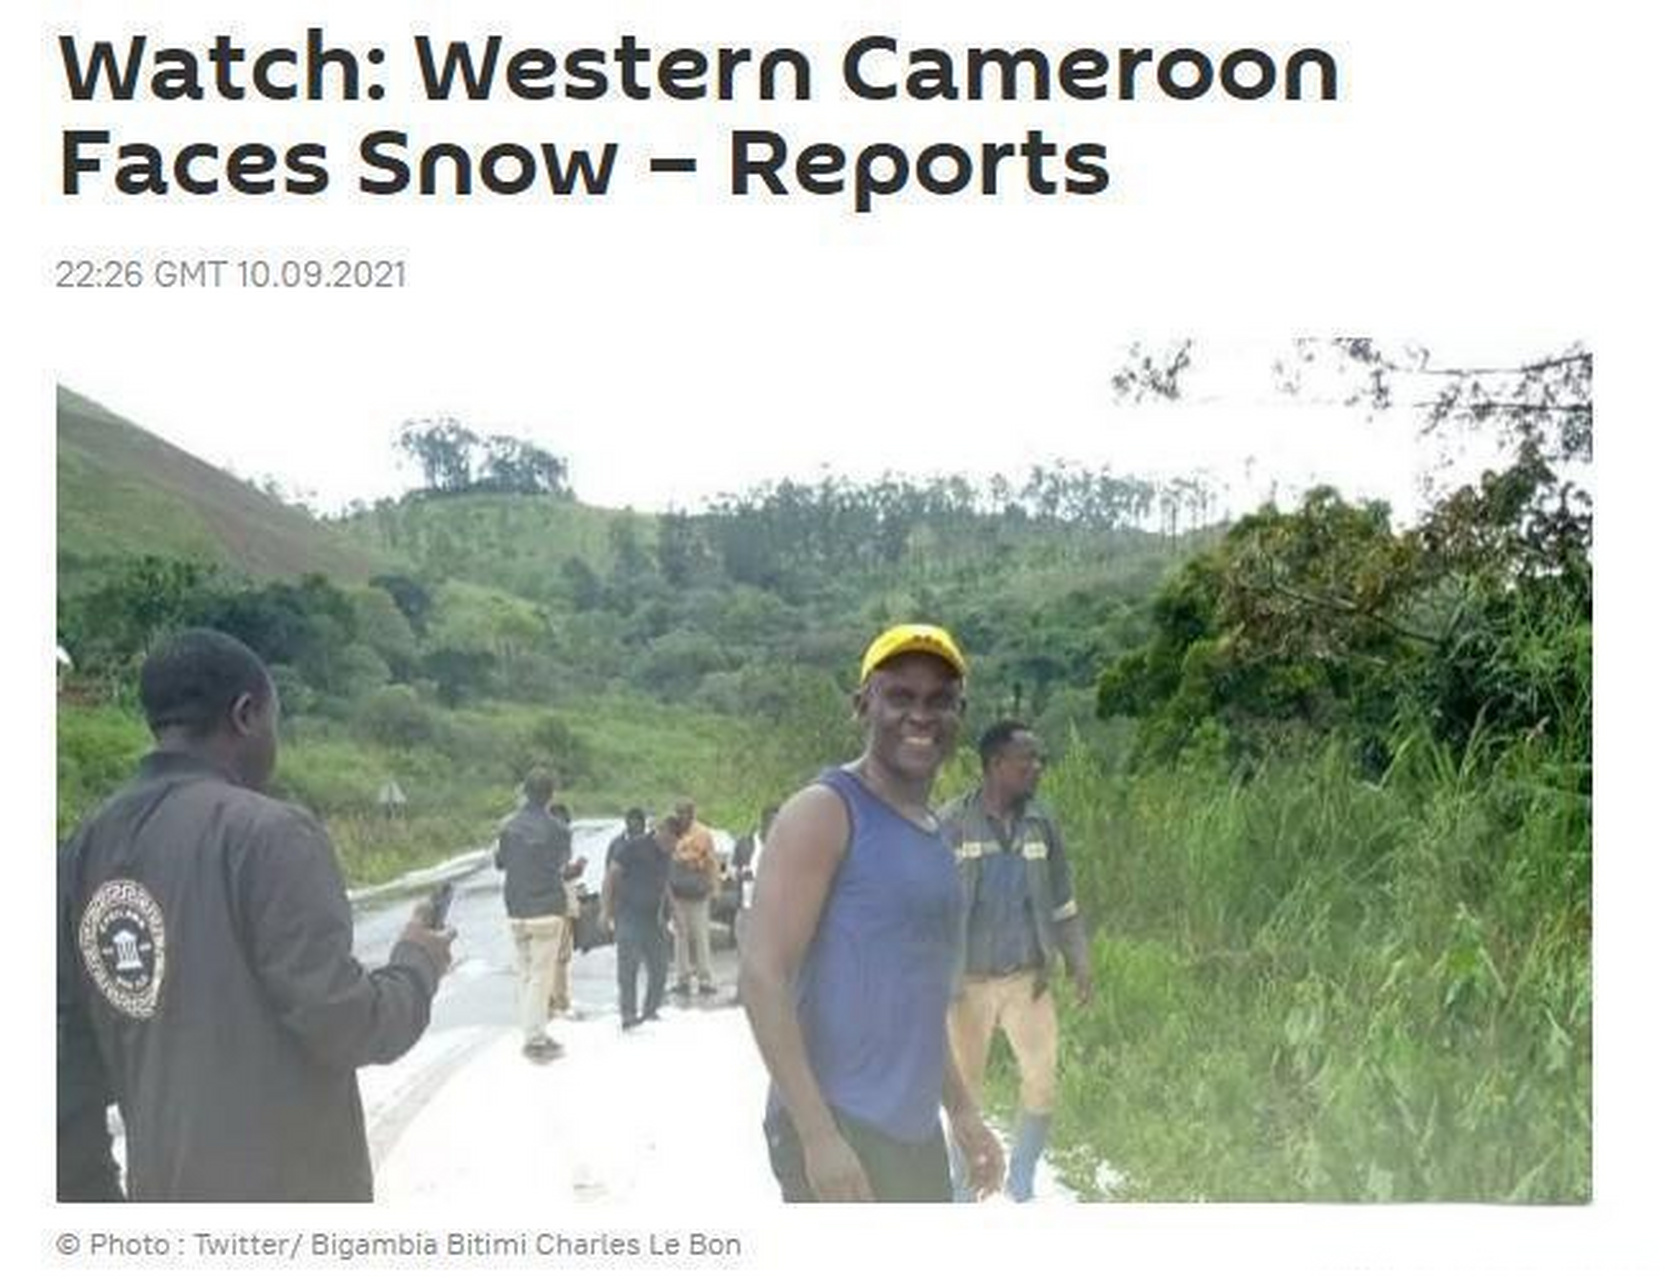 紧挨赤道的非洲国家下雪了】据外媒报道,当地时间9日,赤道附近的非洲